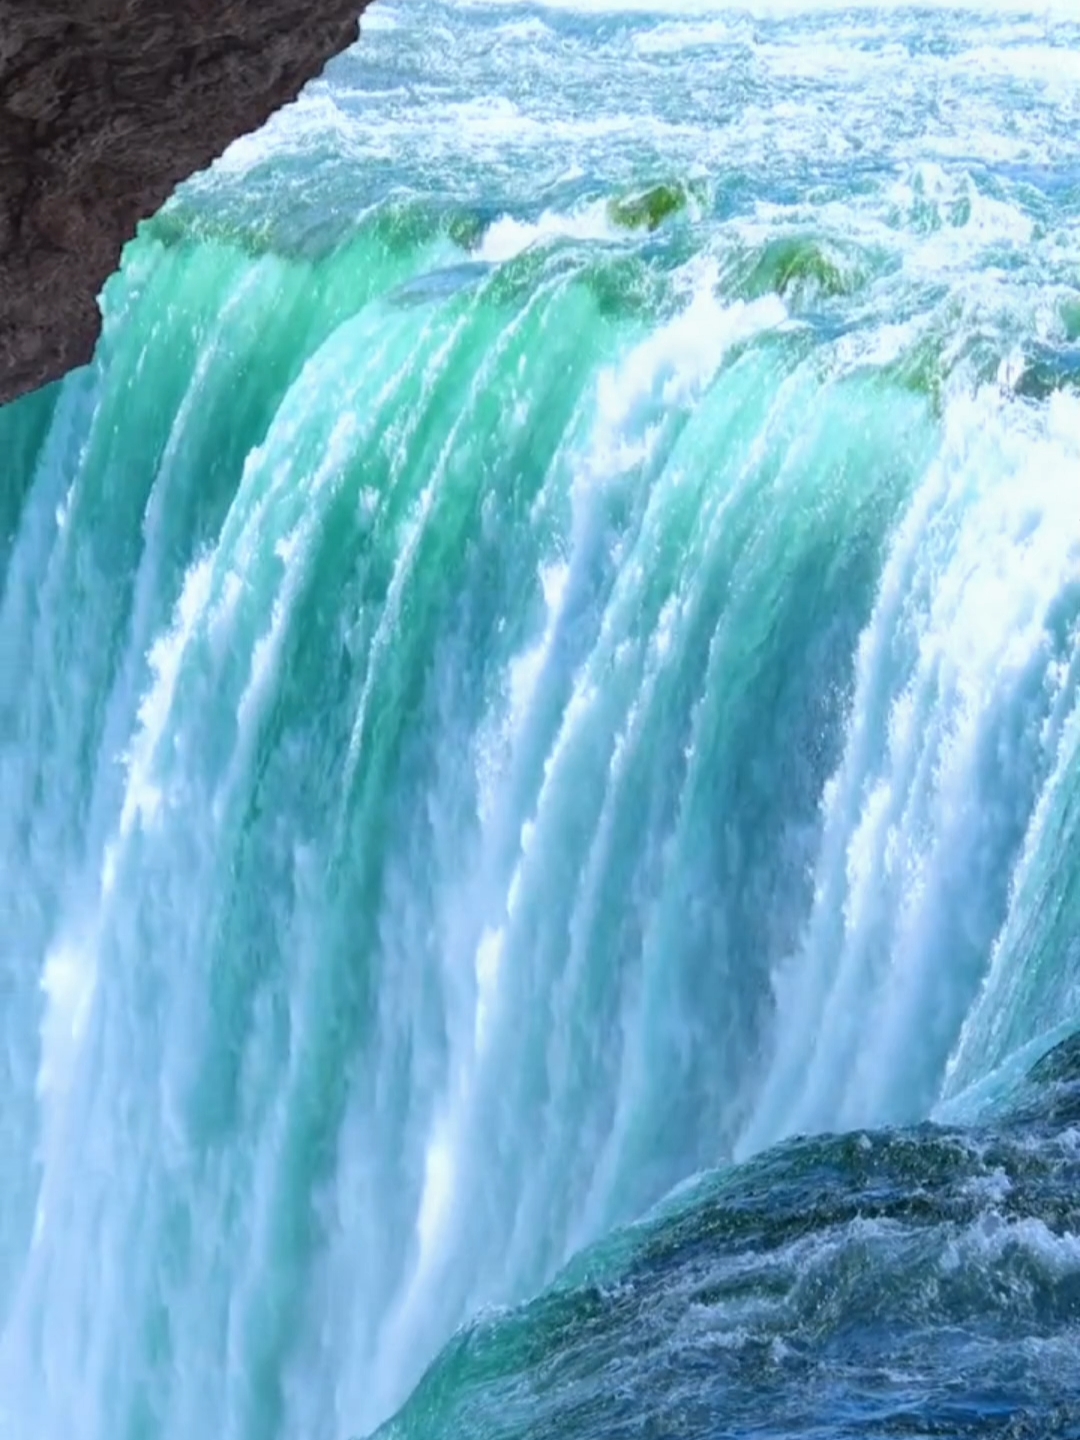 这里就是传说中的尼亚加拉大瀑布，真的好美啊！#尼亚加拉大瀑布 #大自然的奇观